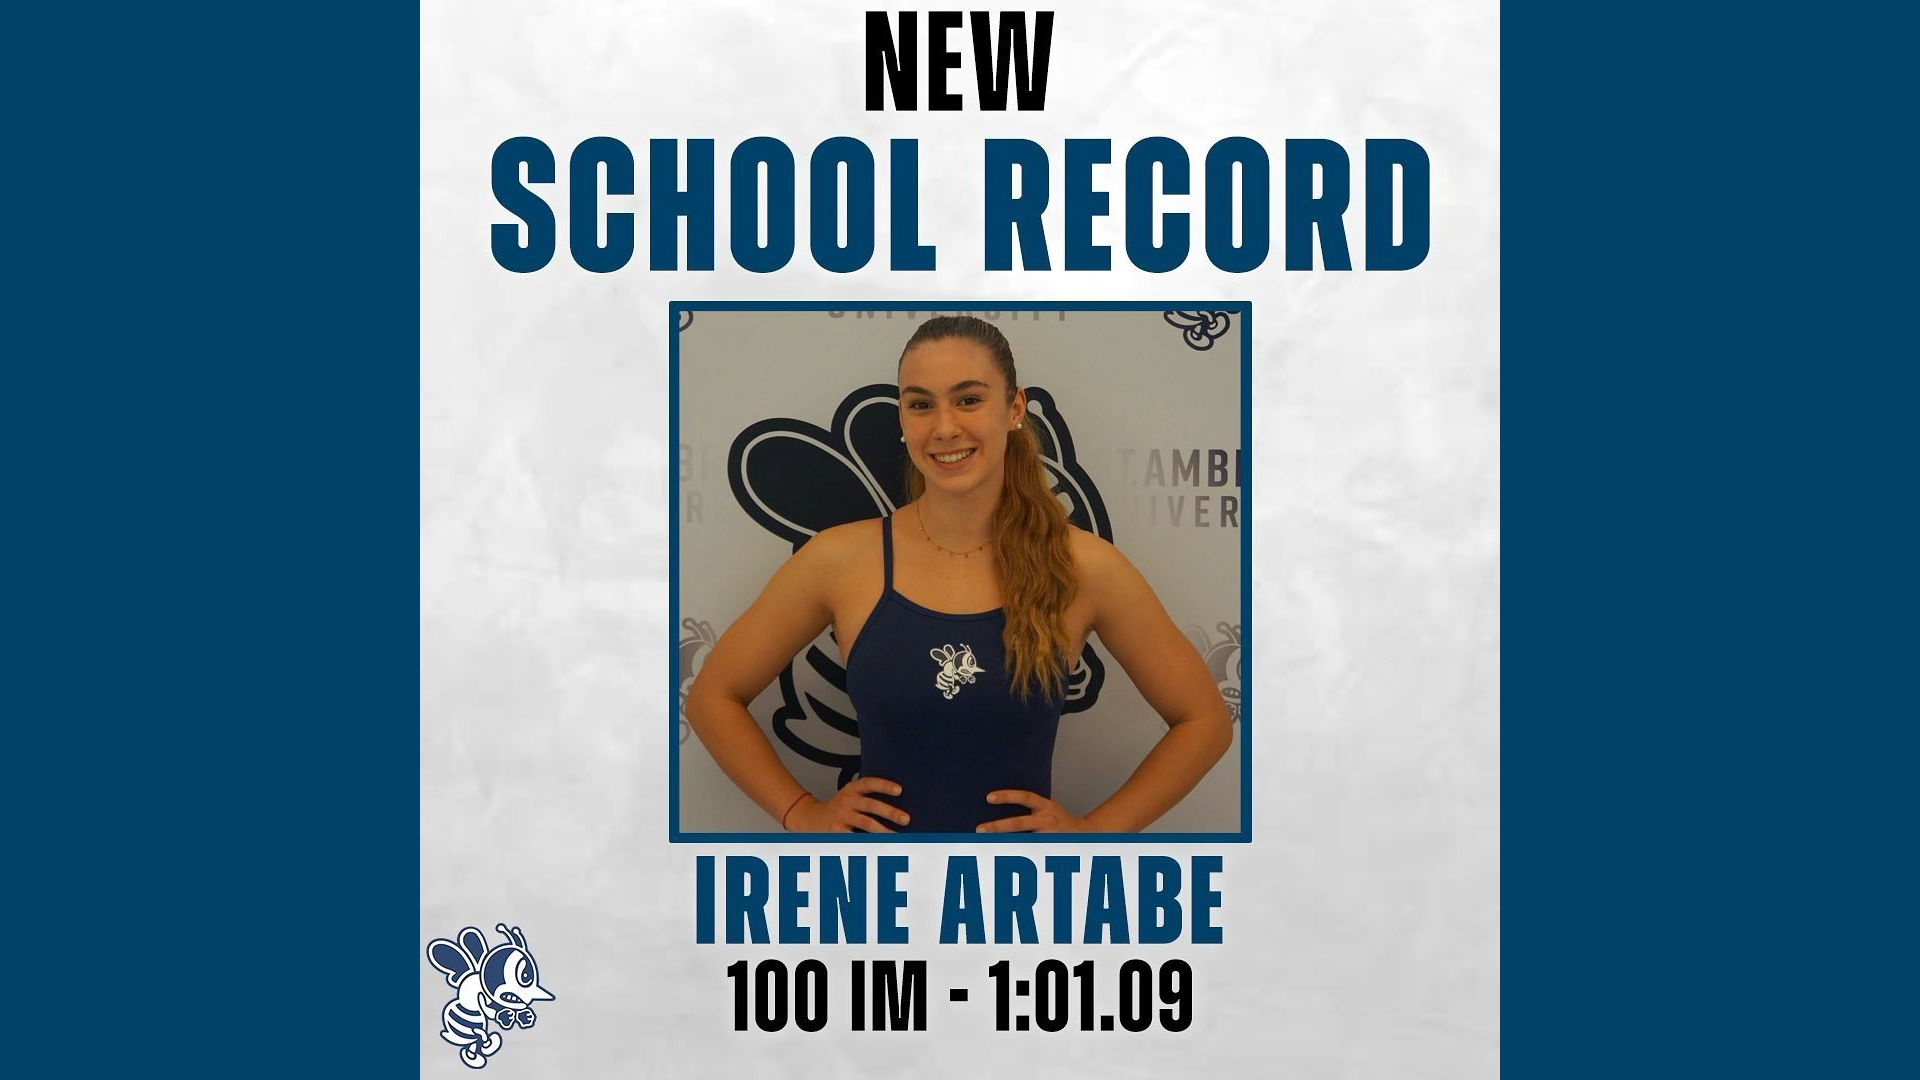 Artabe sets school record at Norse Sprint Invite